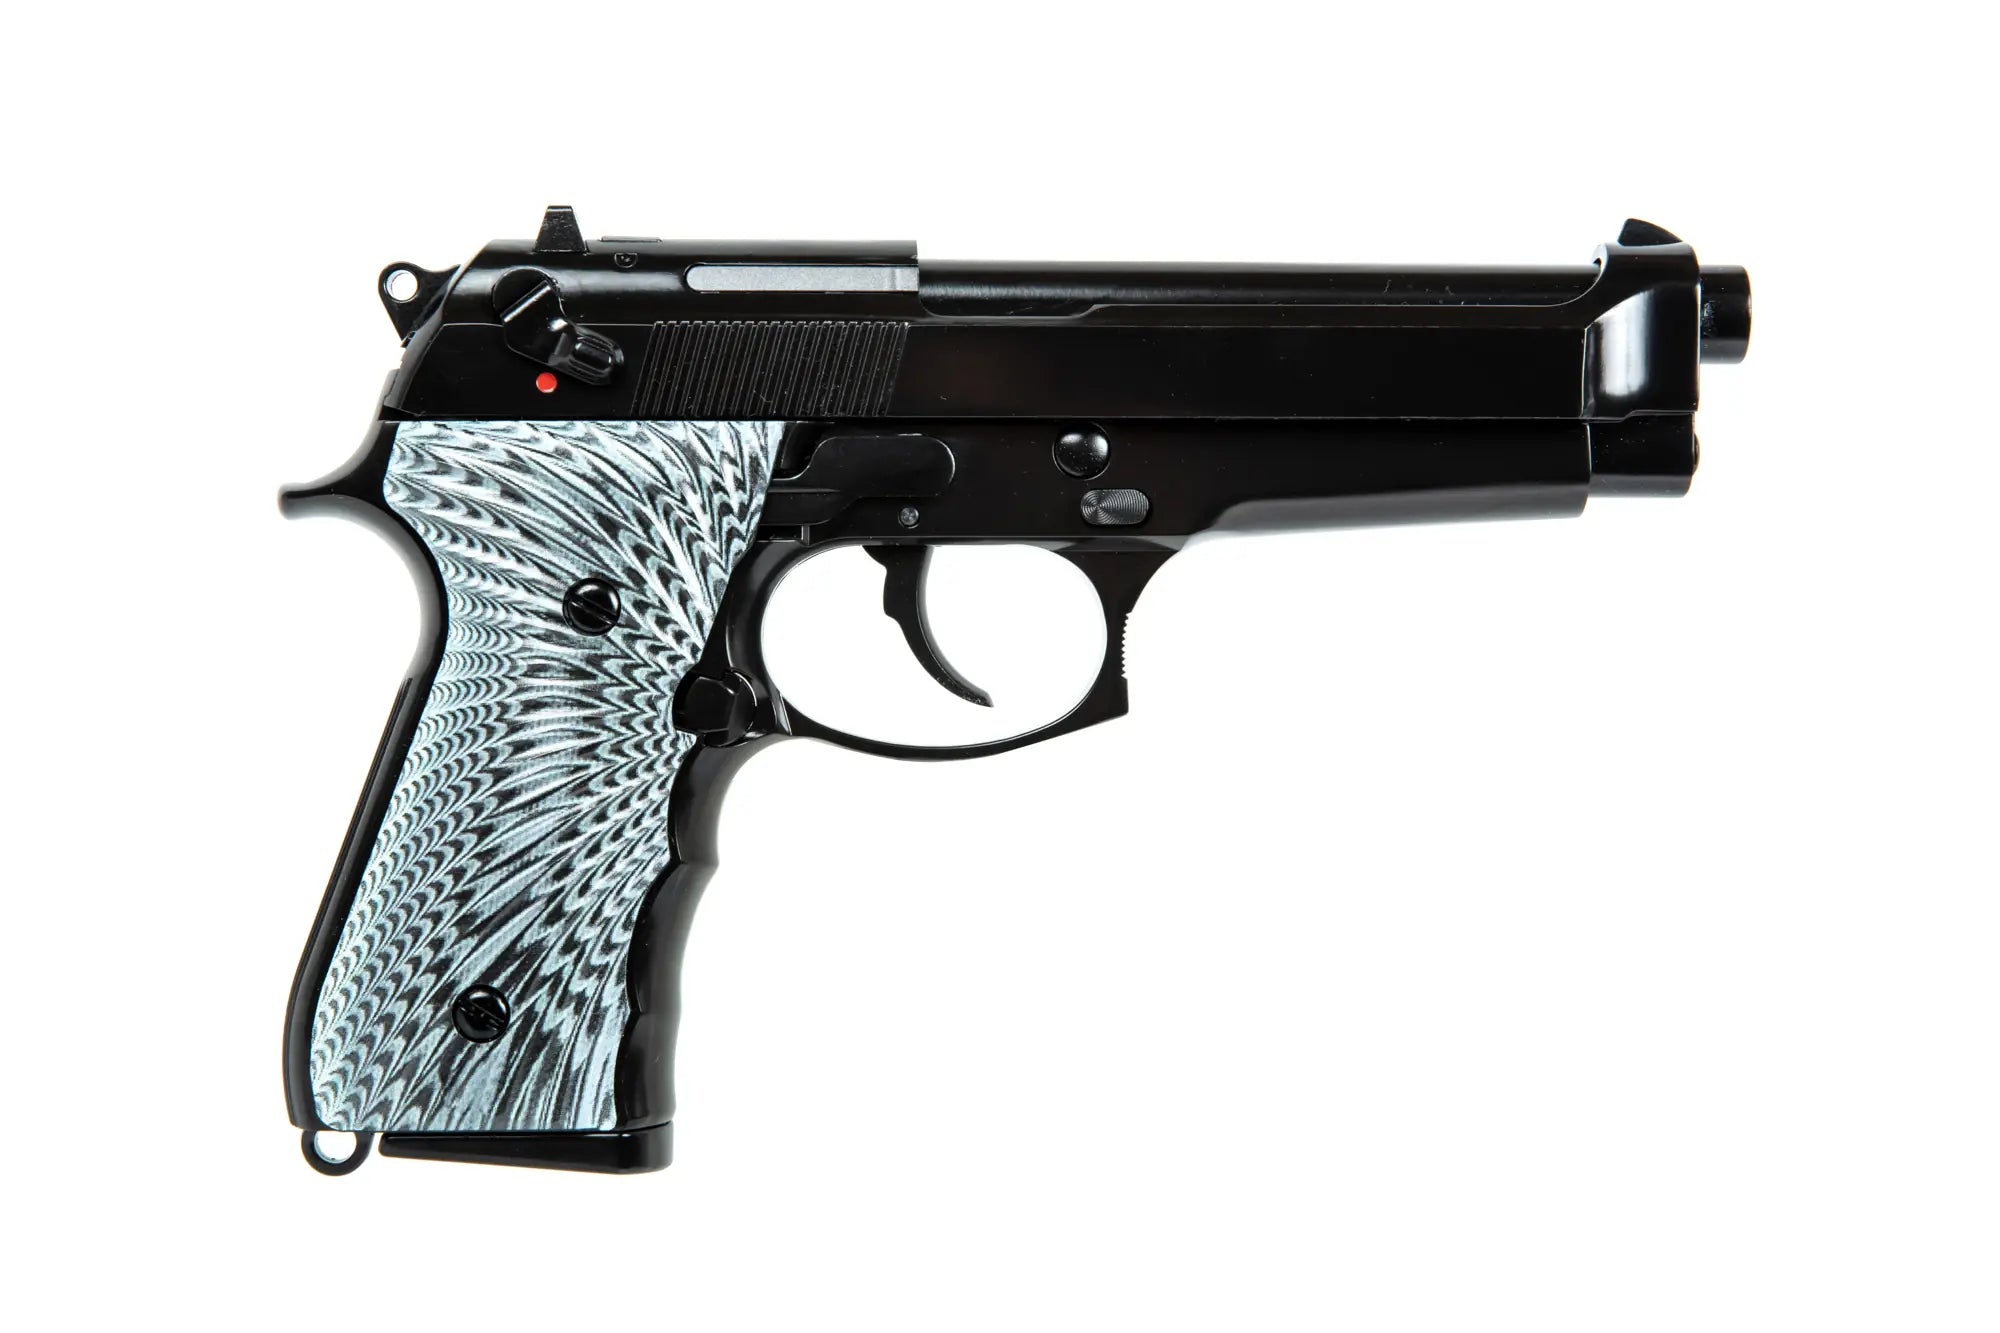 M92 EAGLE gas pistol replica - Black-3